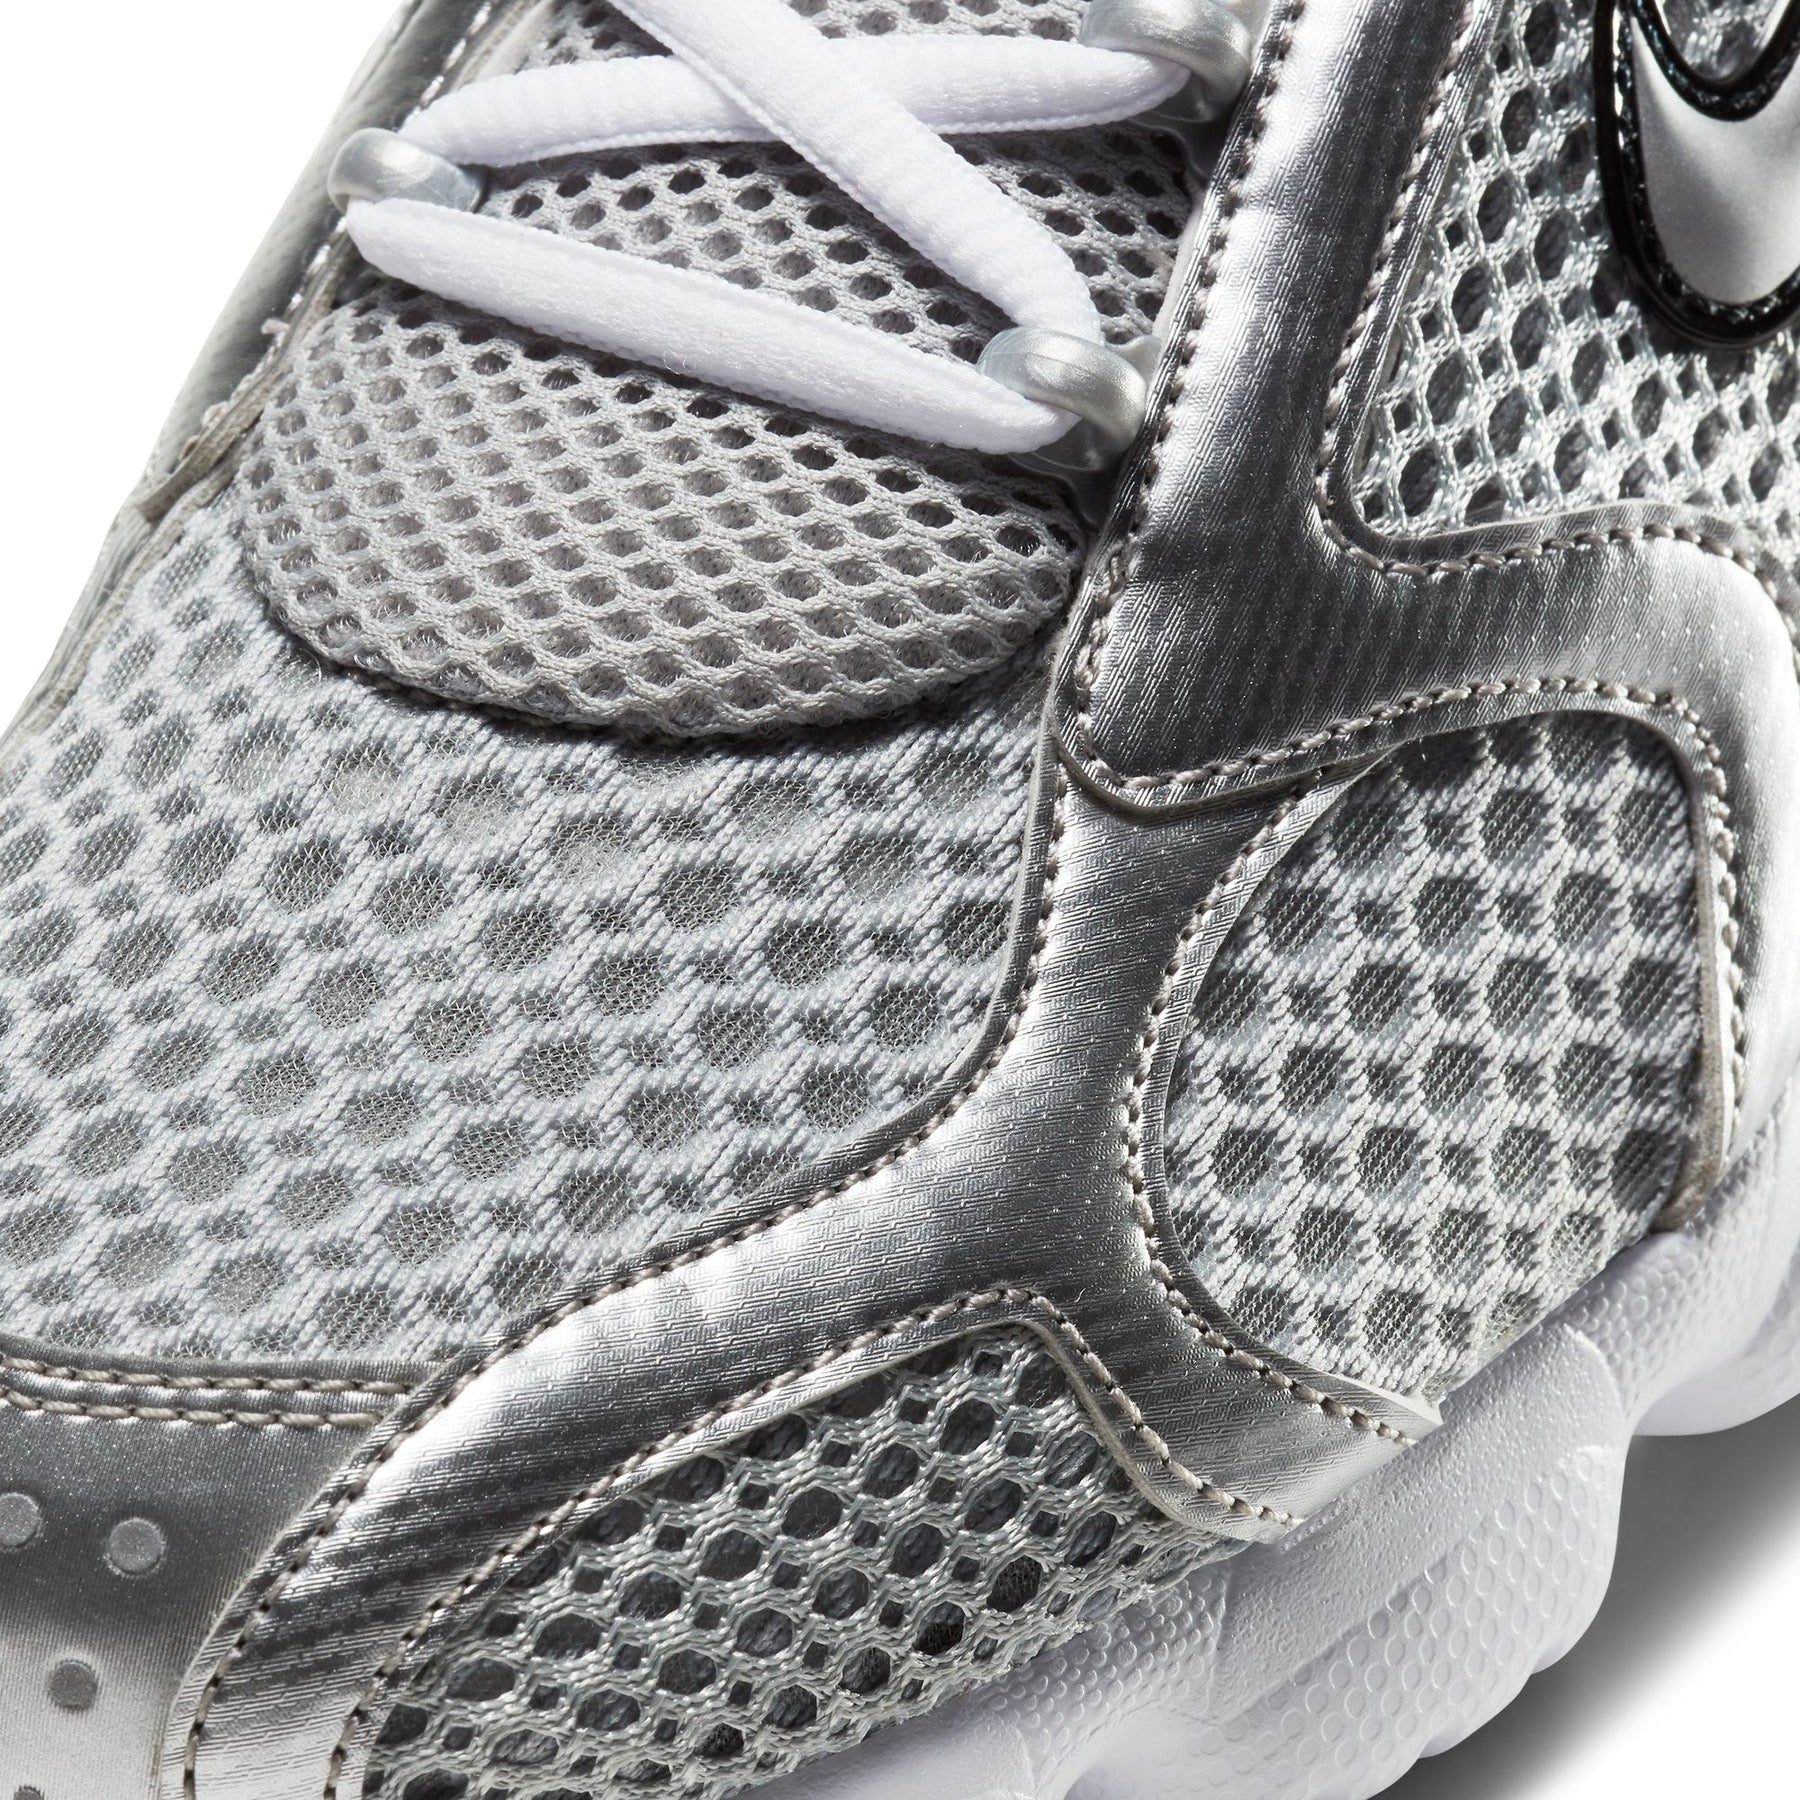 Nike Air Zoom Spiridon Cage 2 "Metallic Silver" - Men